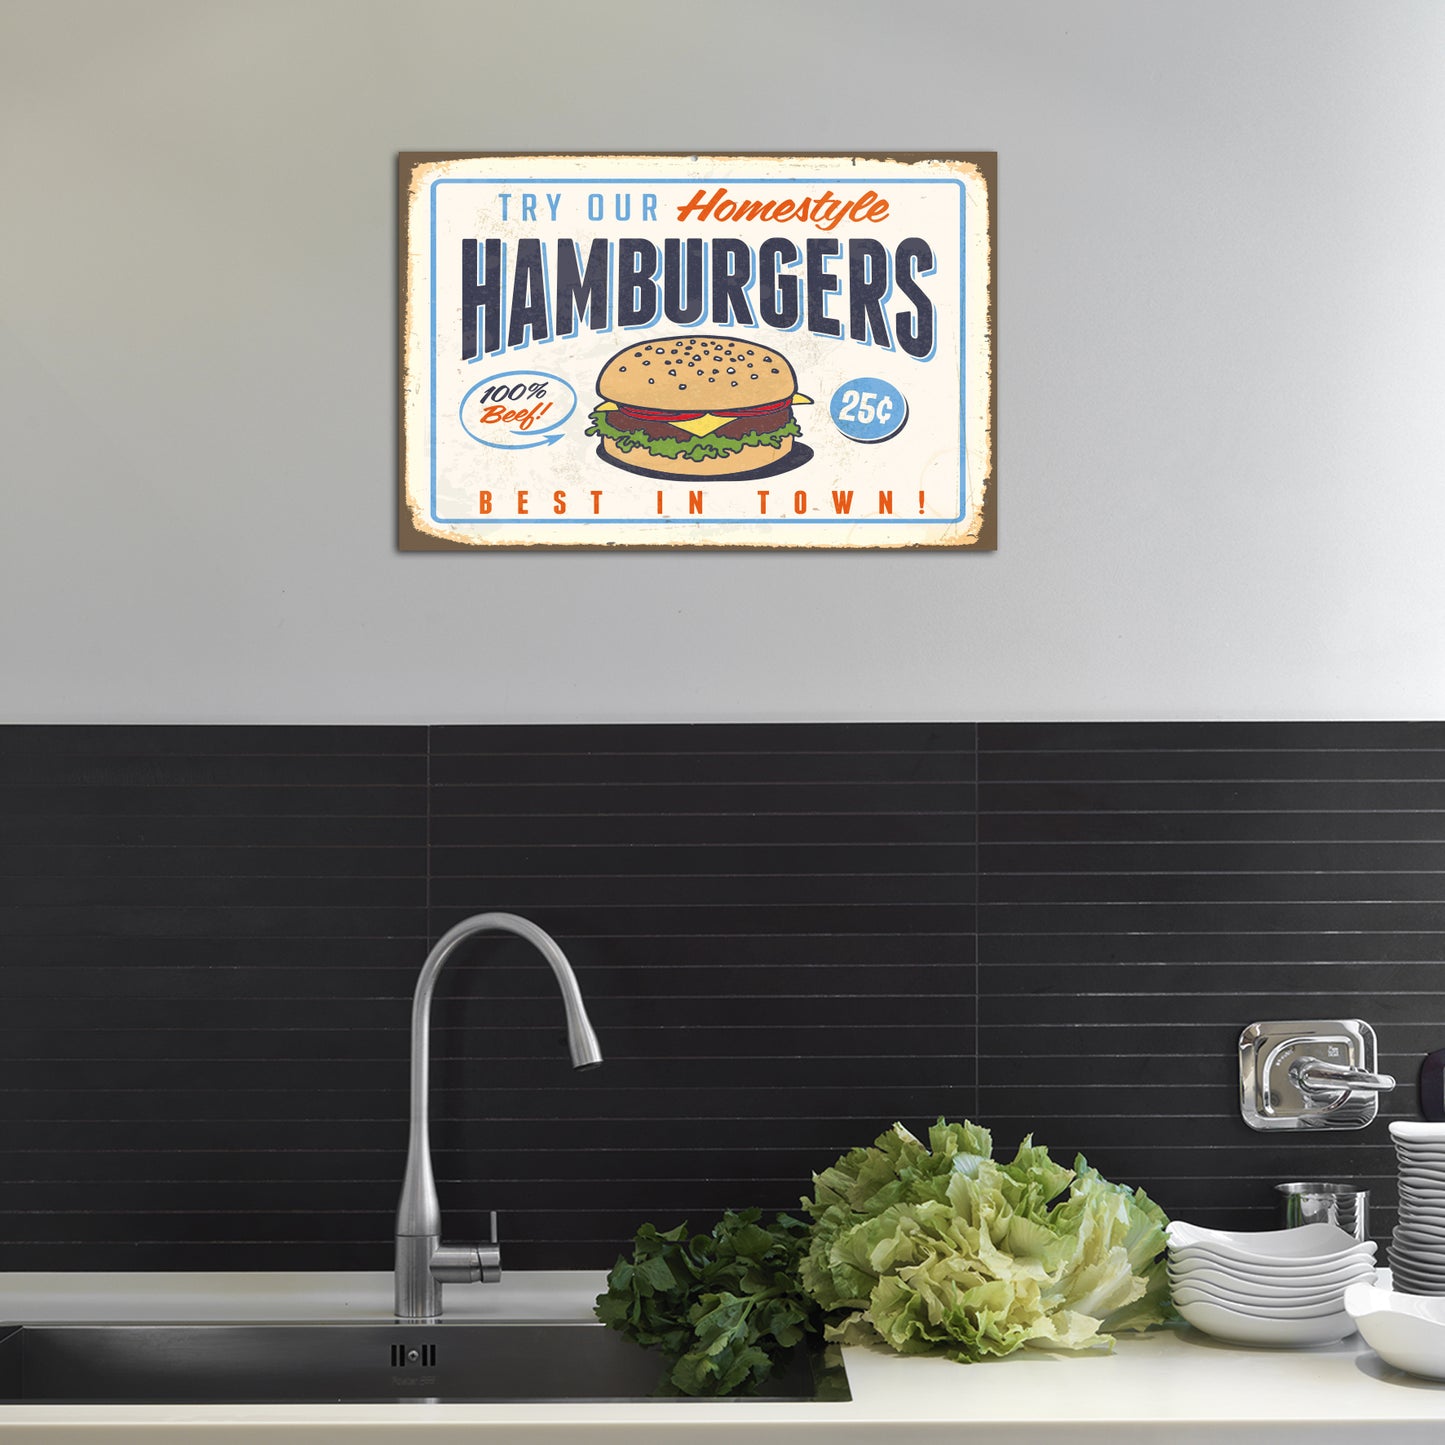 Blechschild - Try Our Homestyle Hamburgers Wohnbeispiel